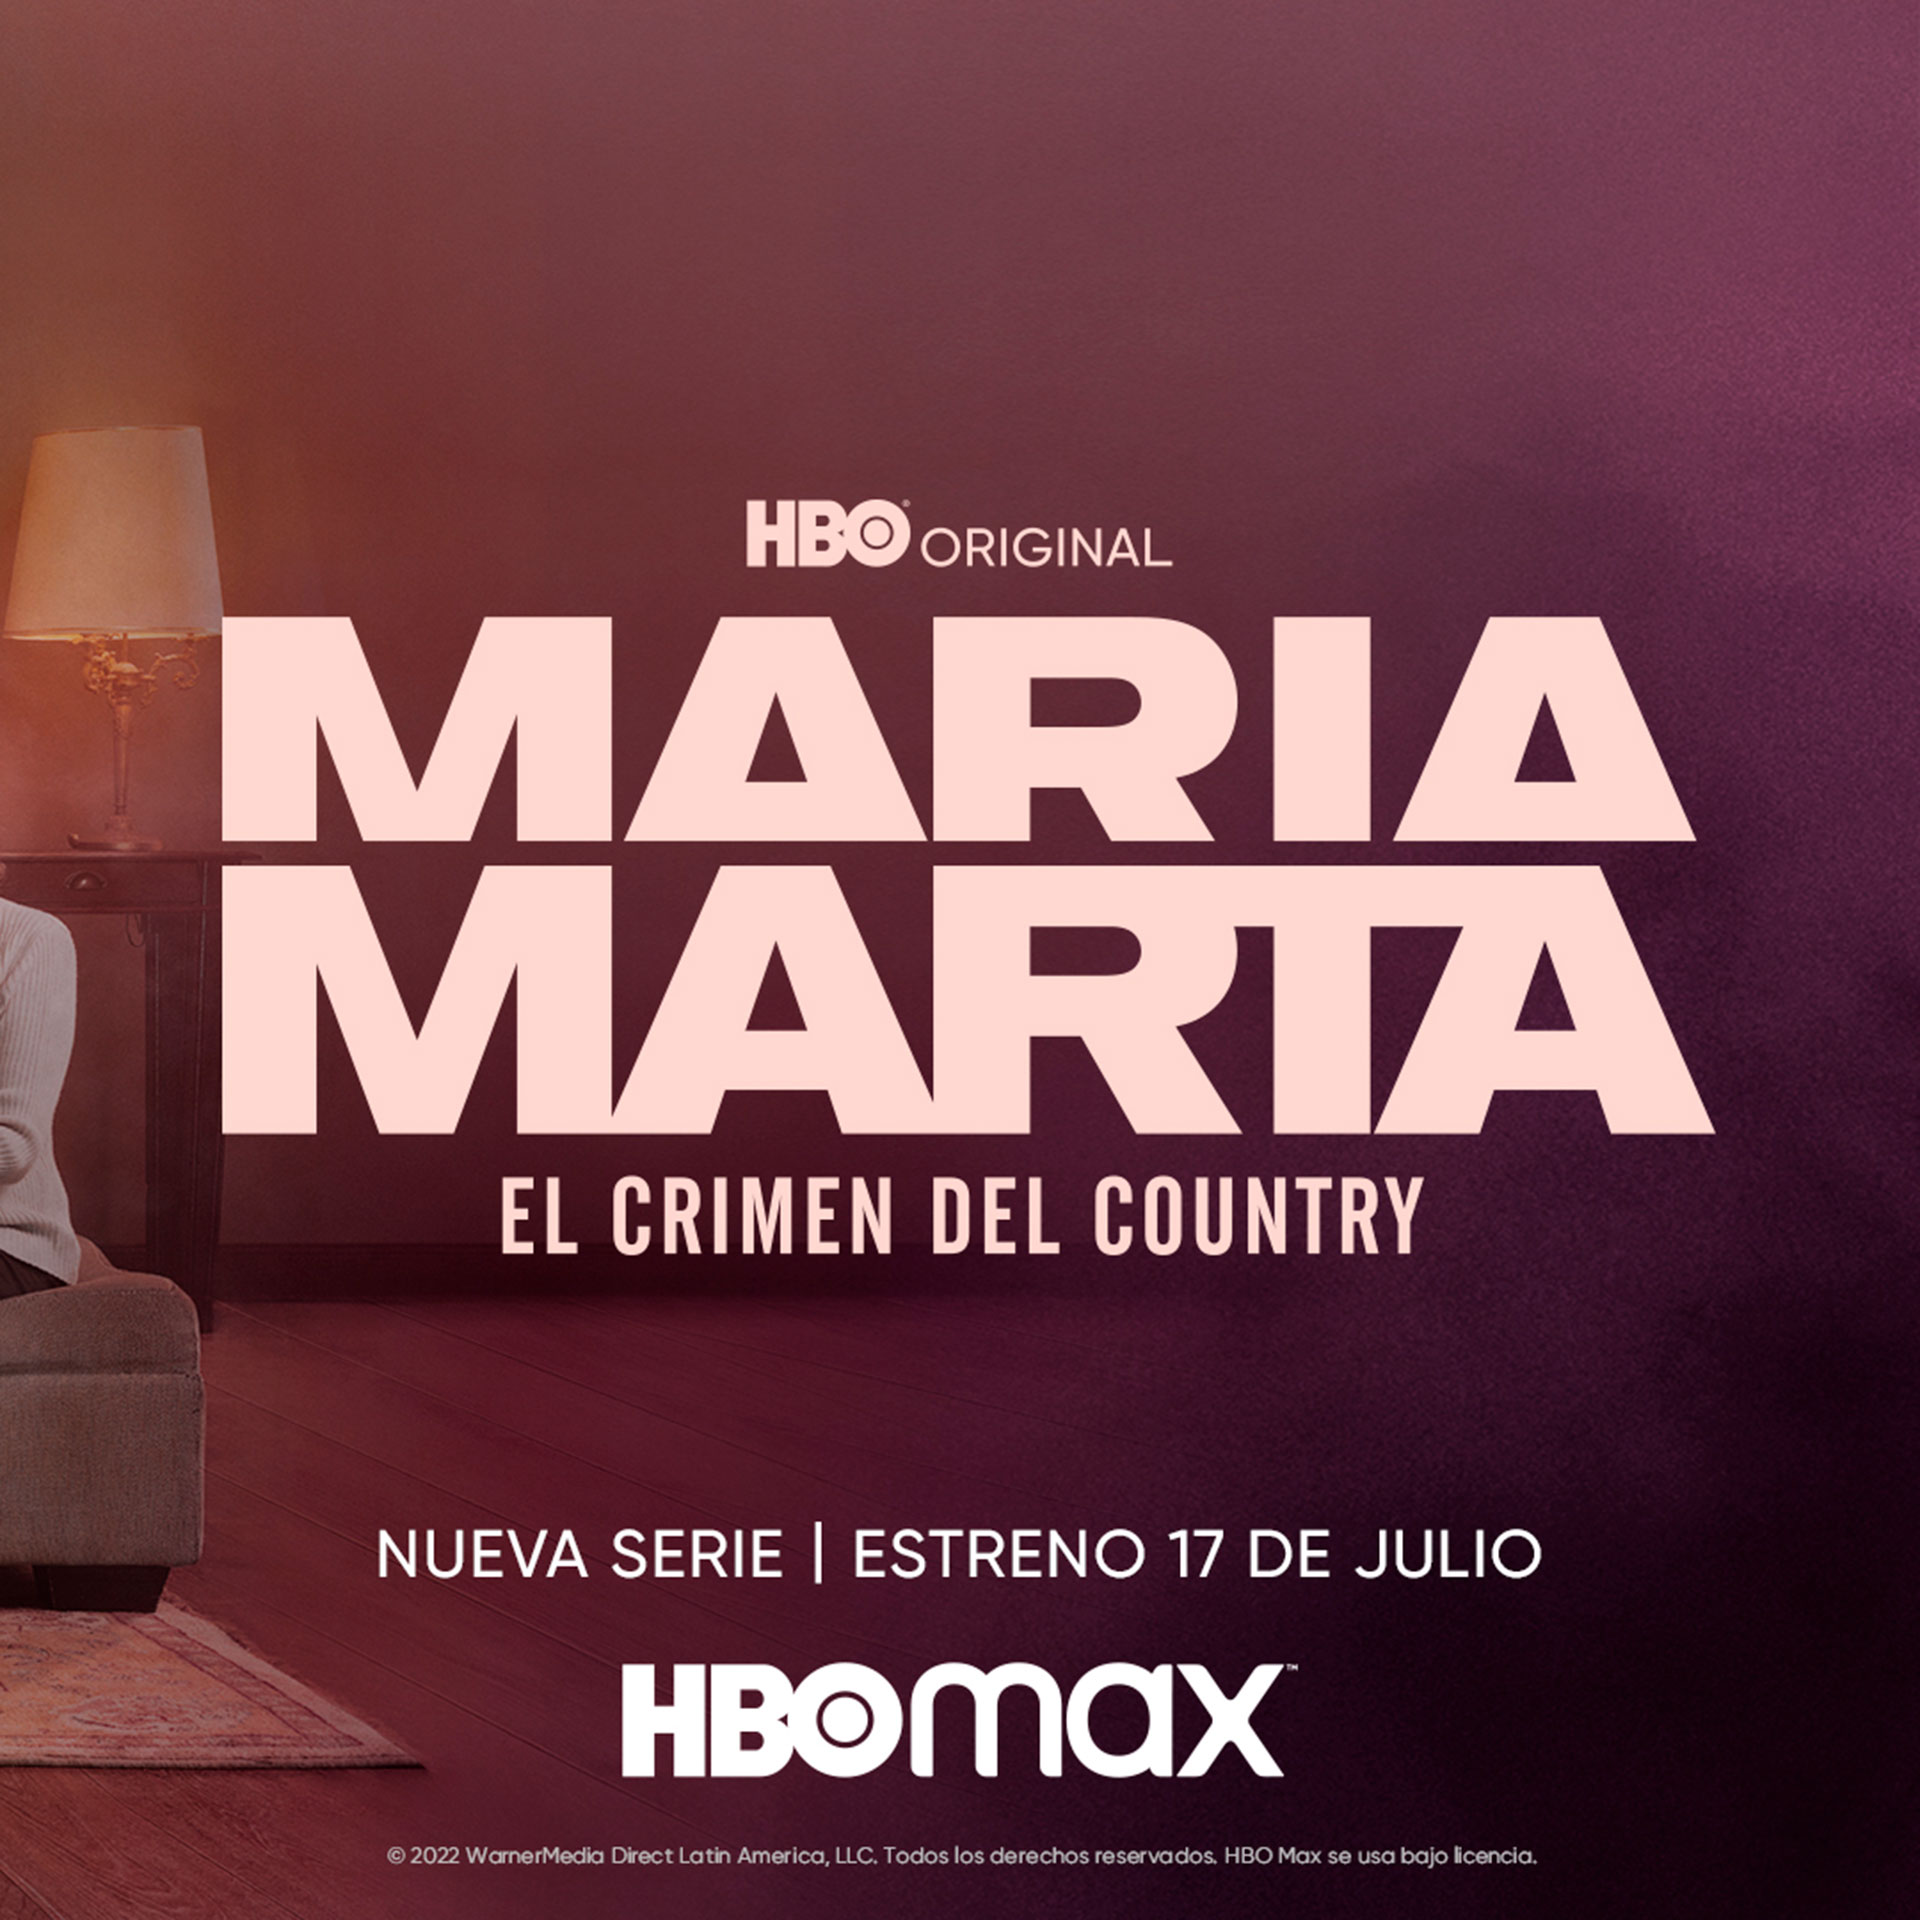 La serie llega el 17 de julio a HBO Max. (HBO)